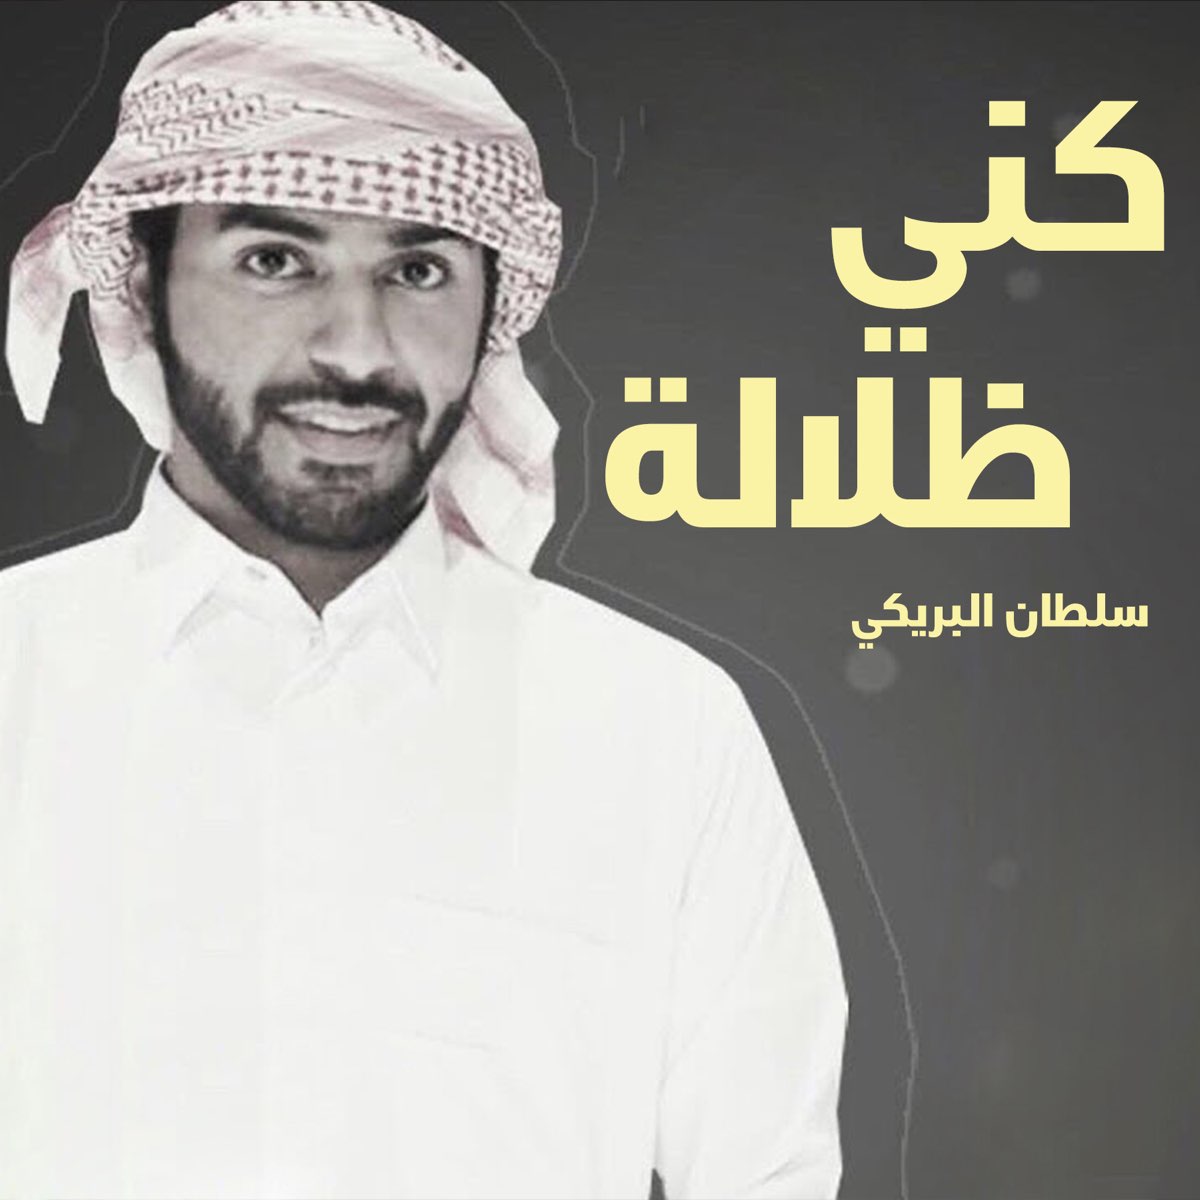 ‎شهاب العز - Single - Album by سلطان البريكي - Apple Music